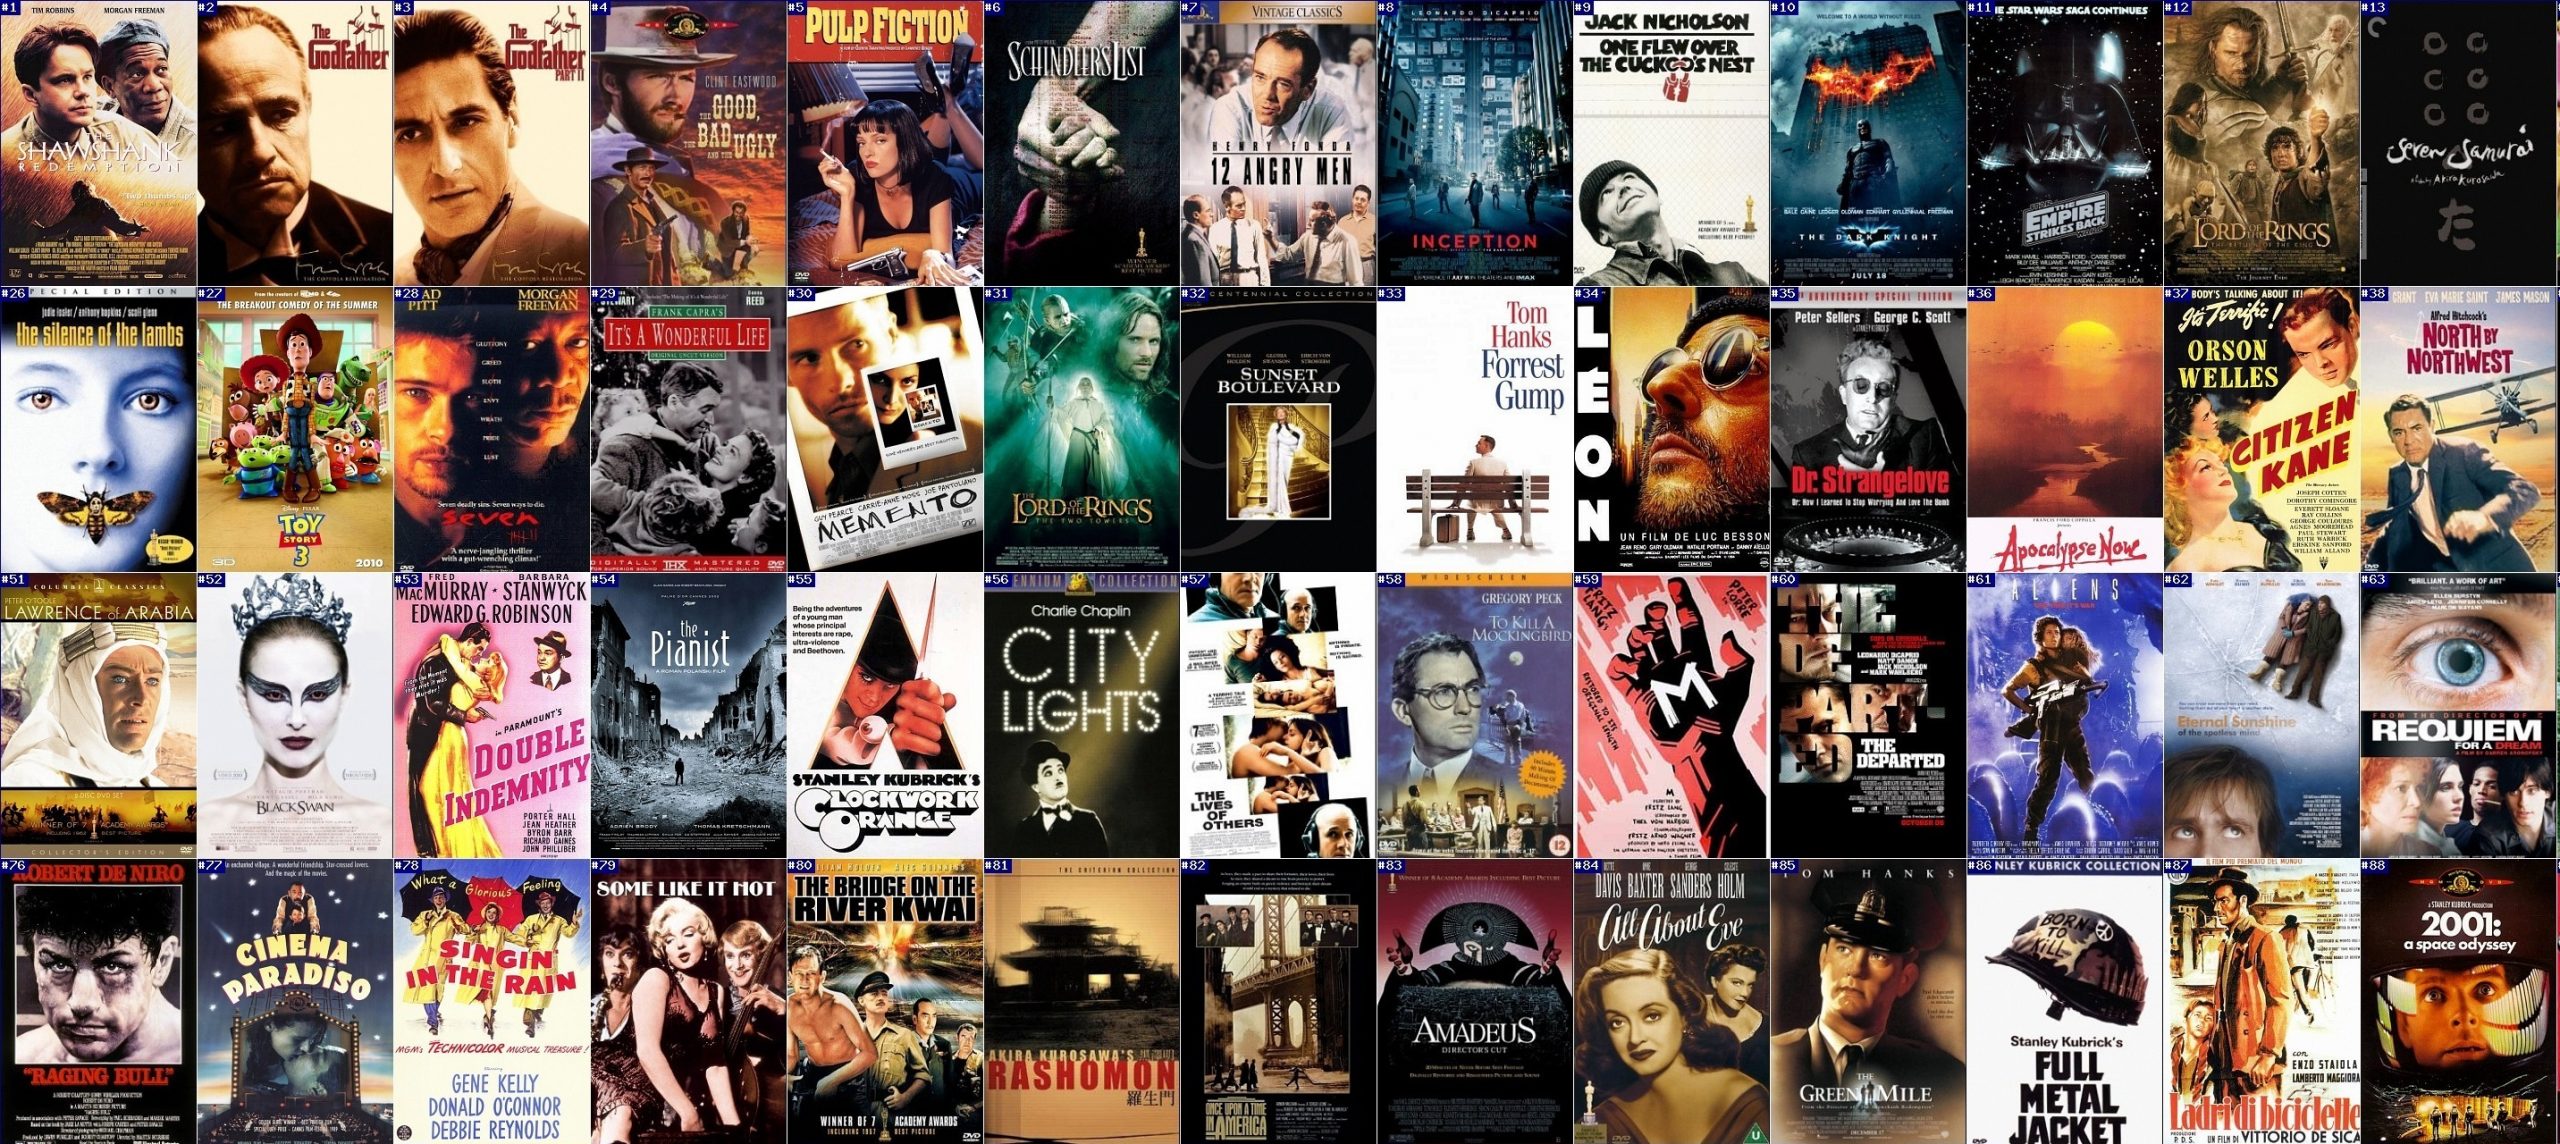 Top 10 Melhores Filmes de Faroeste de Clint Eastwood 